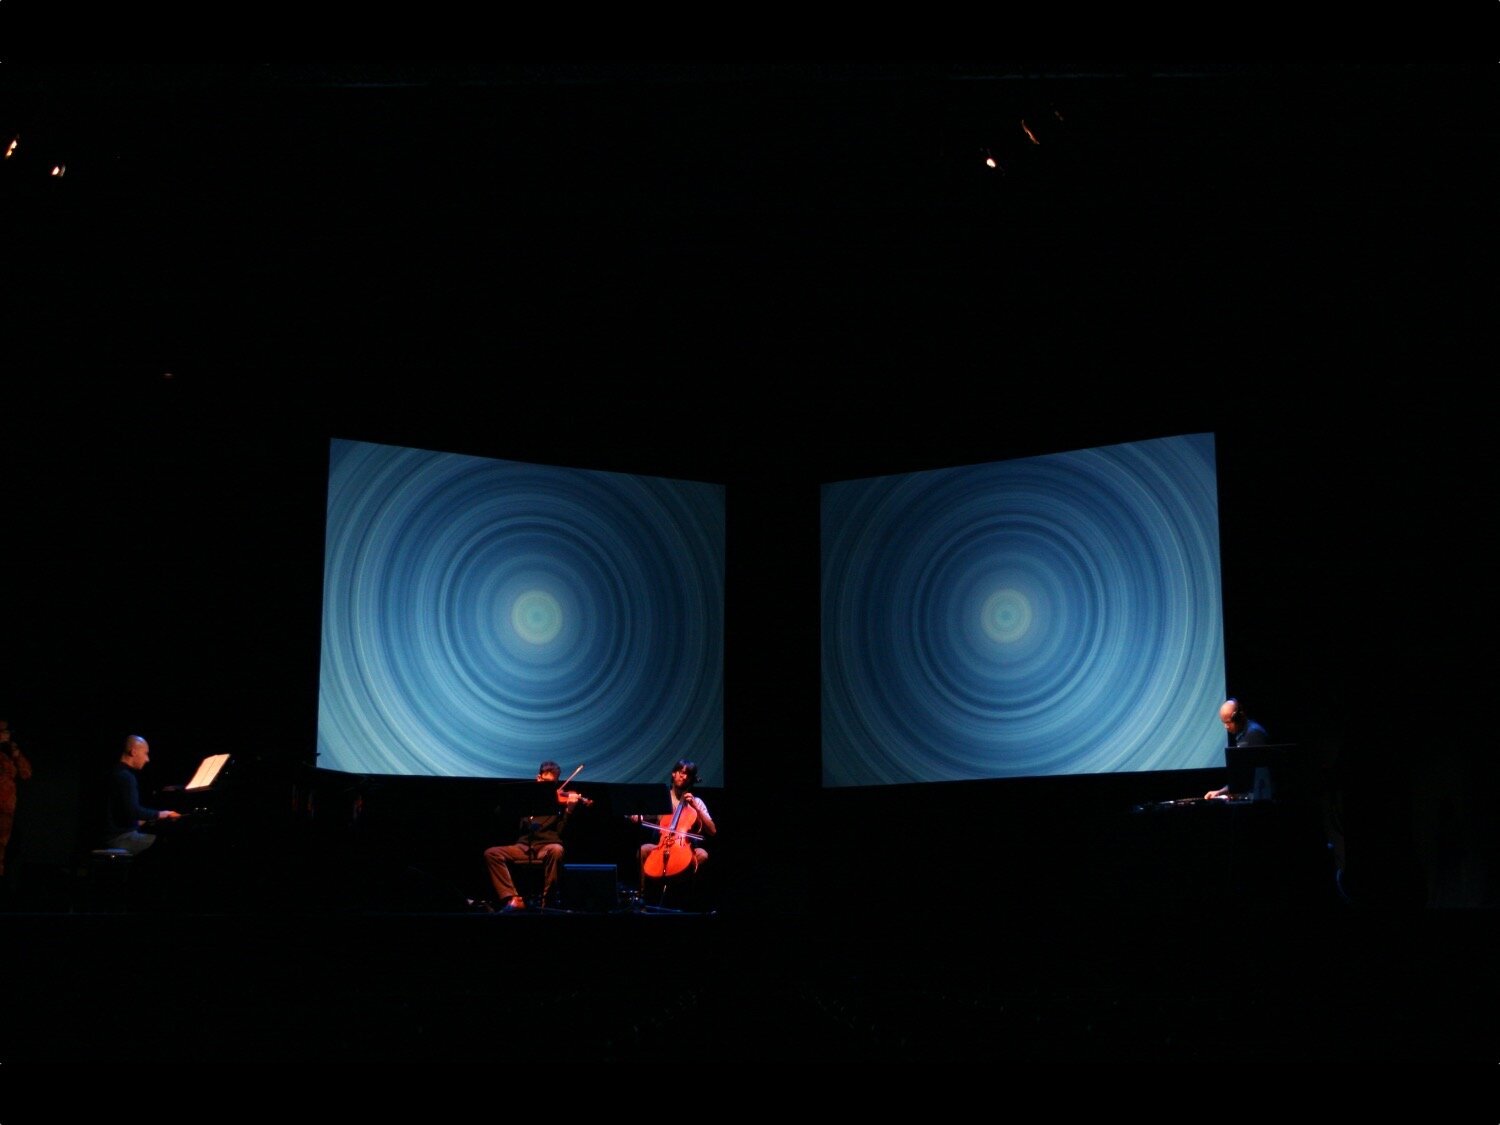  Terra Nova Sinfonia AntarcticaTeatro Manzoni
Milan, 2008  
© photo by AJ Weissbard 